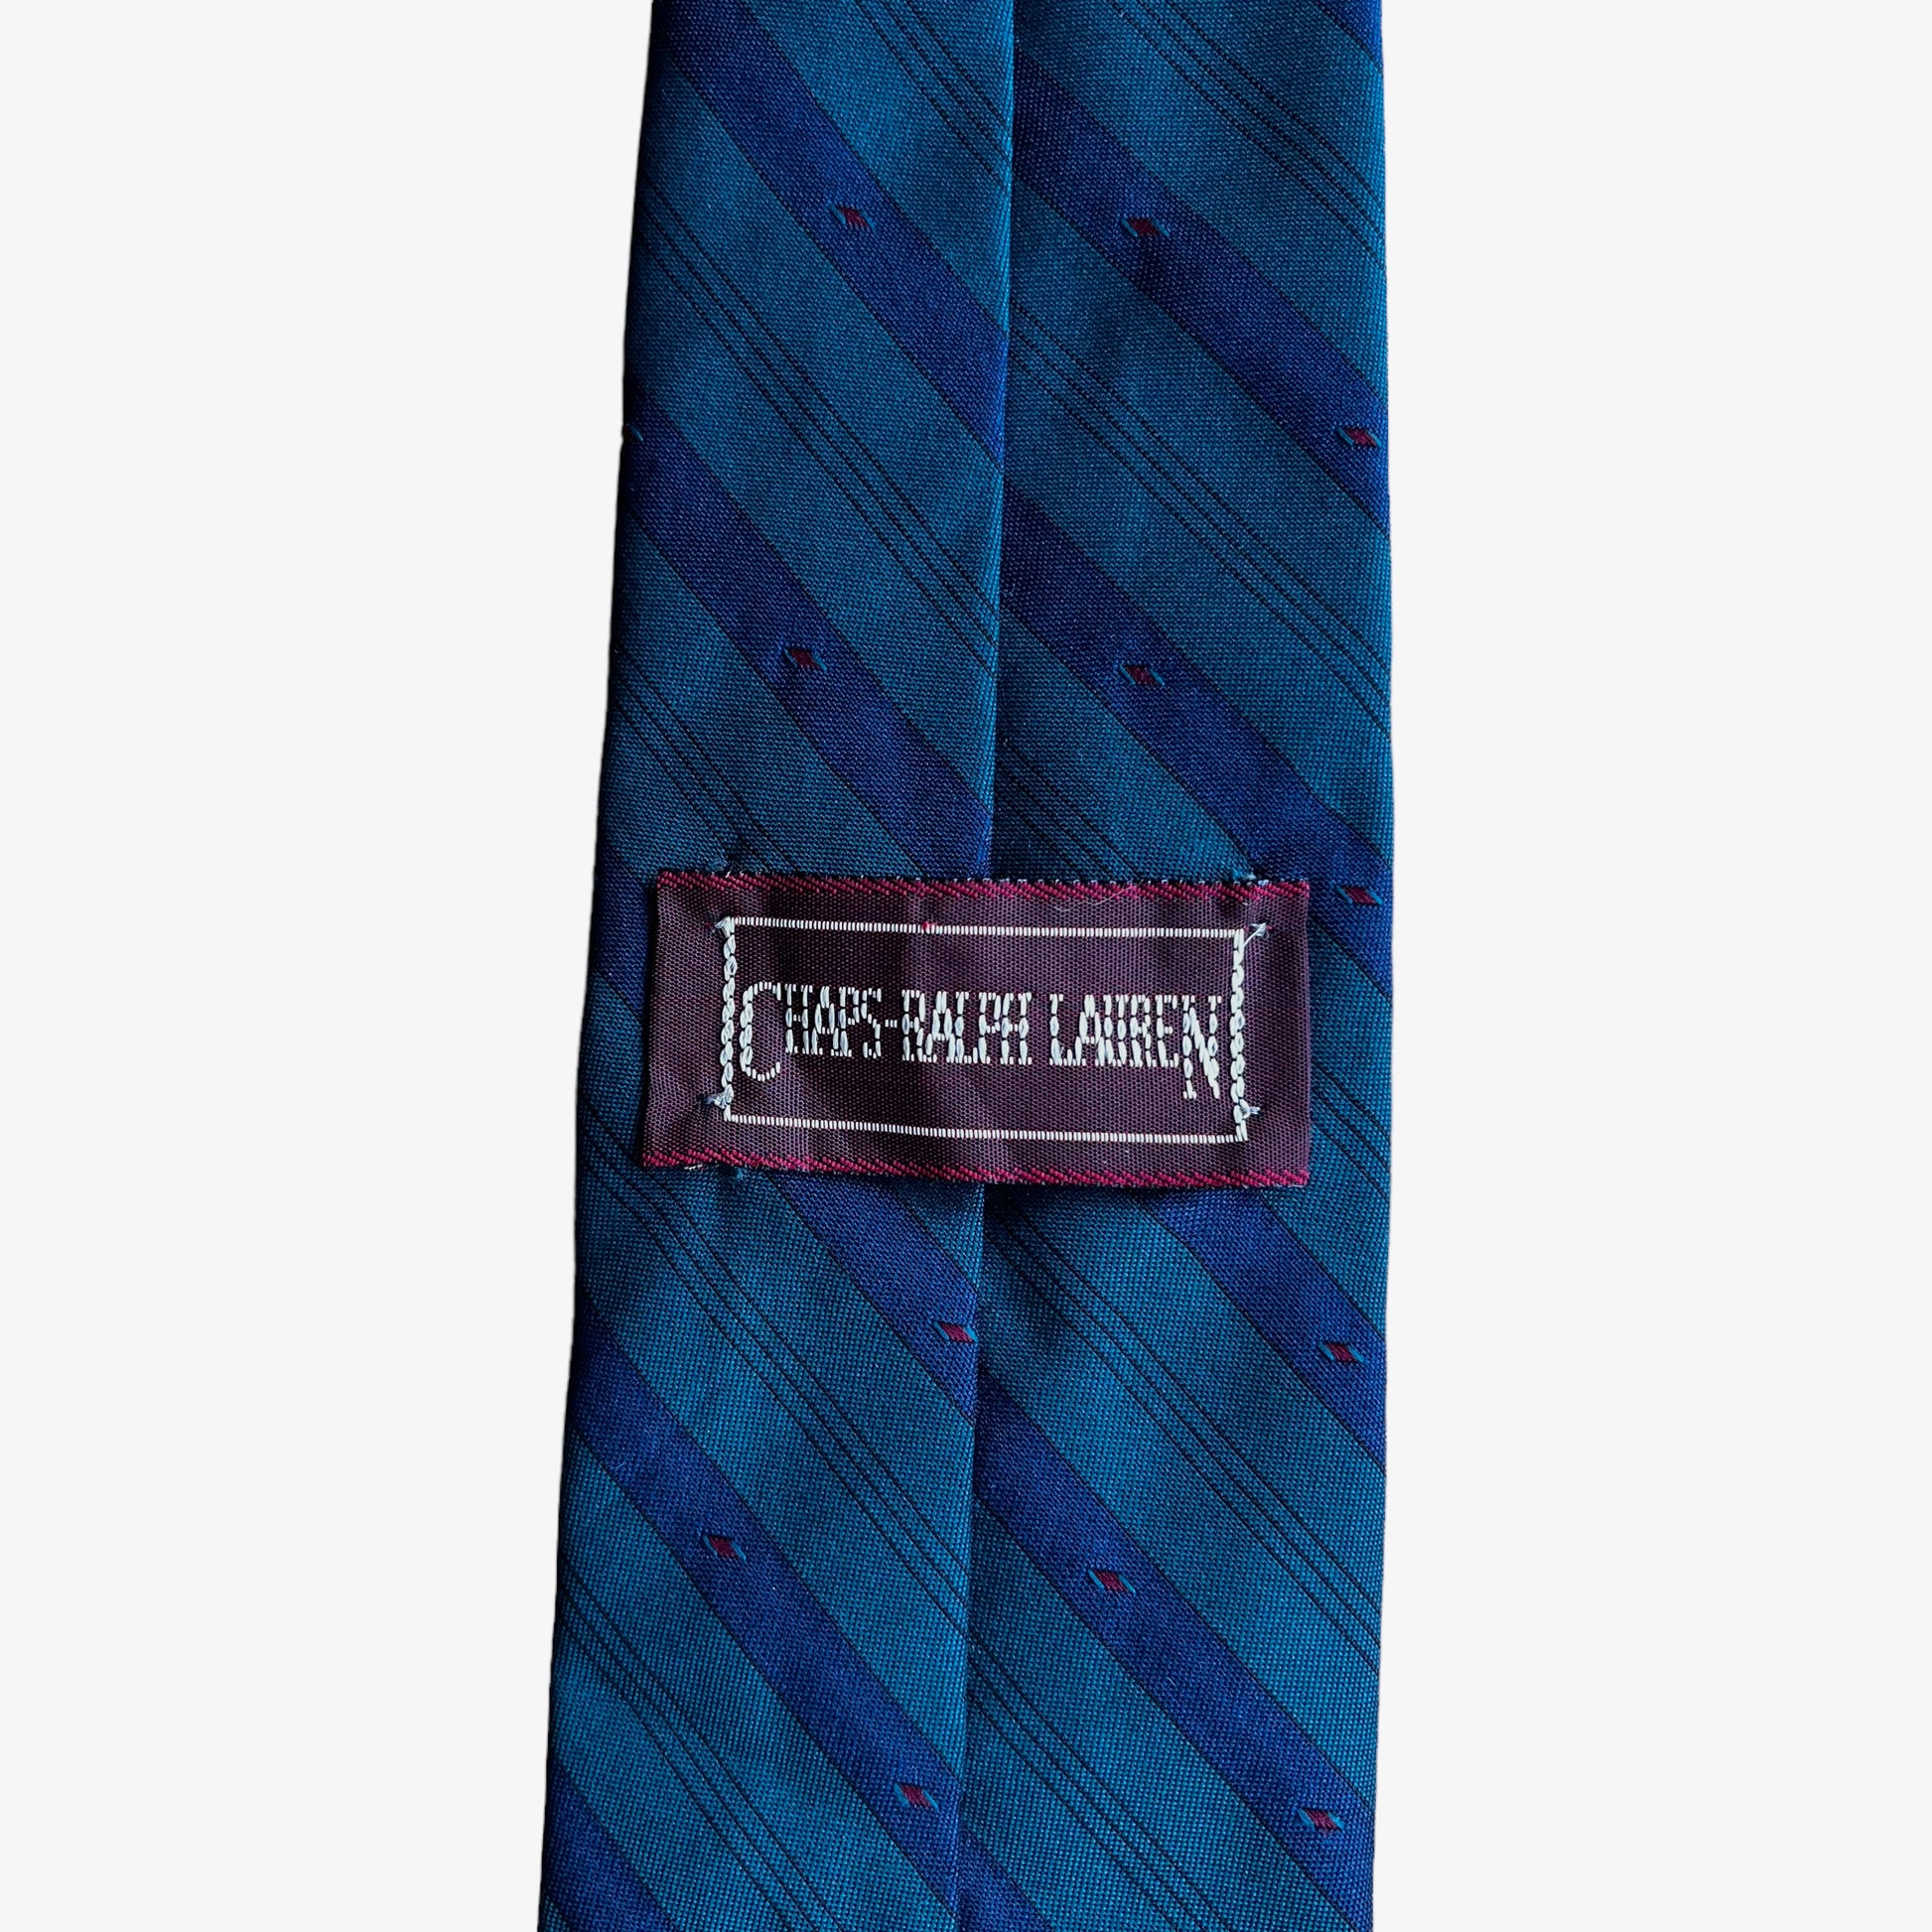 Vintage 90s Chaps x Polo Ralph Lauren Striped Silk Tie Label - Casspios Dream